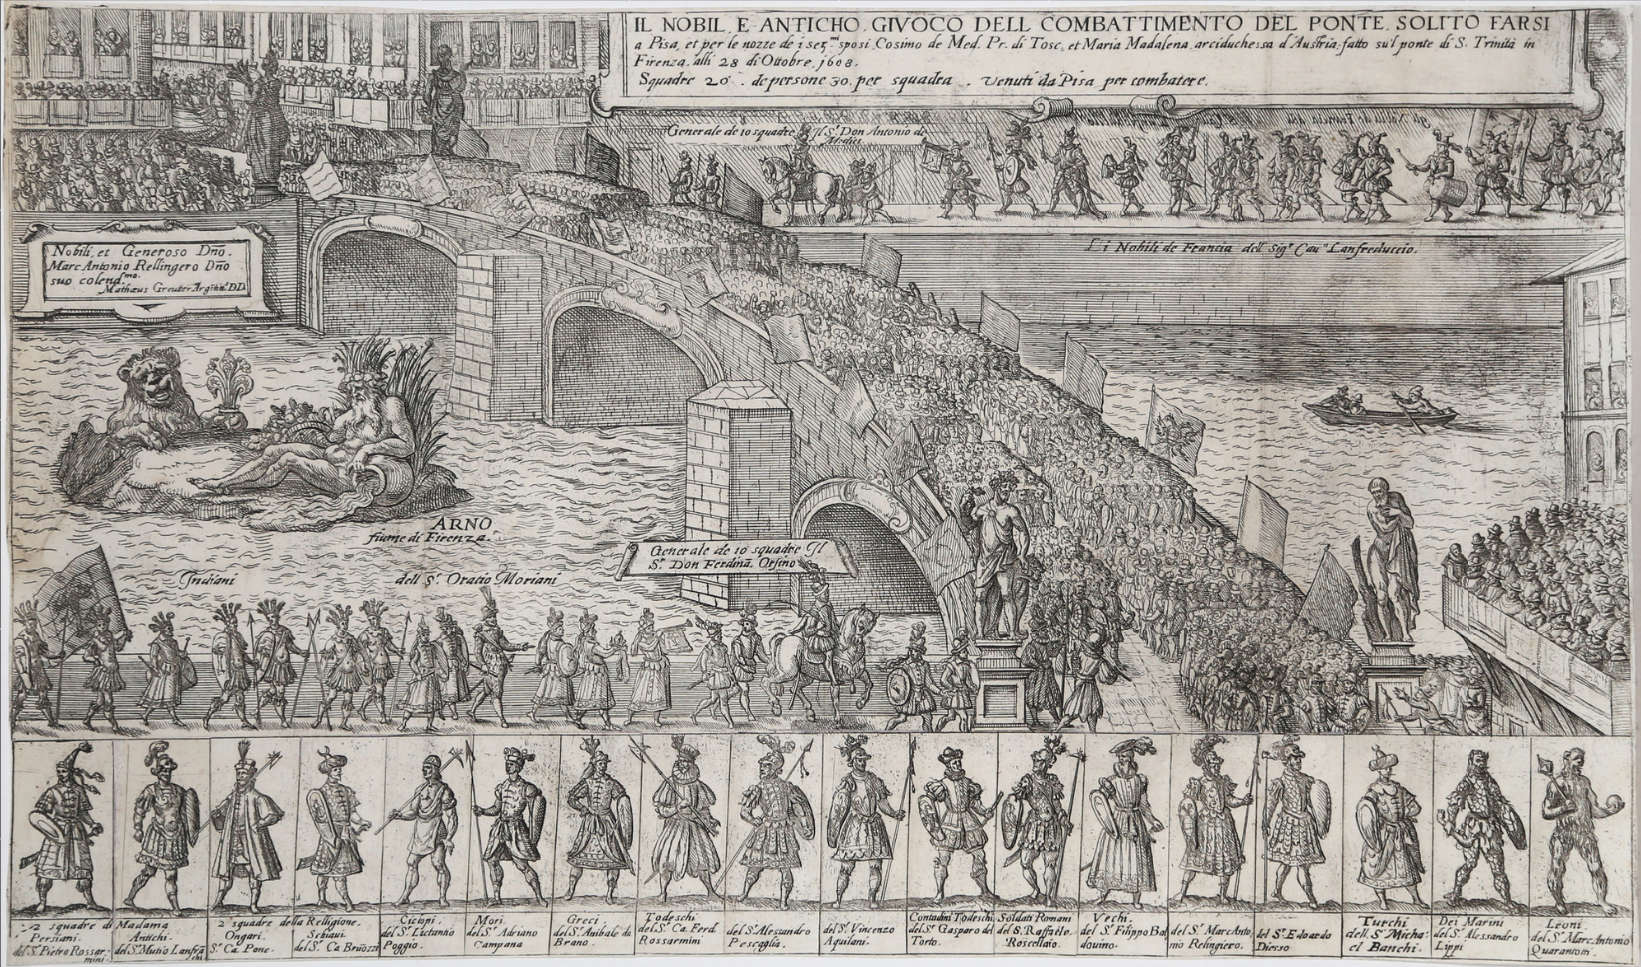 Matthäus Greuter, Il nobil e antico giuoco del combattimento del ponte solito farsi a Pisa... (1608; Radierung, 273 x 499 mm)